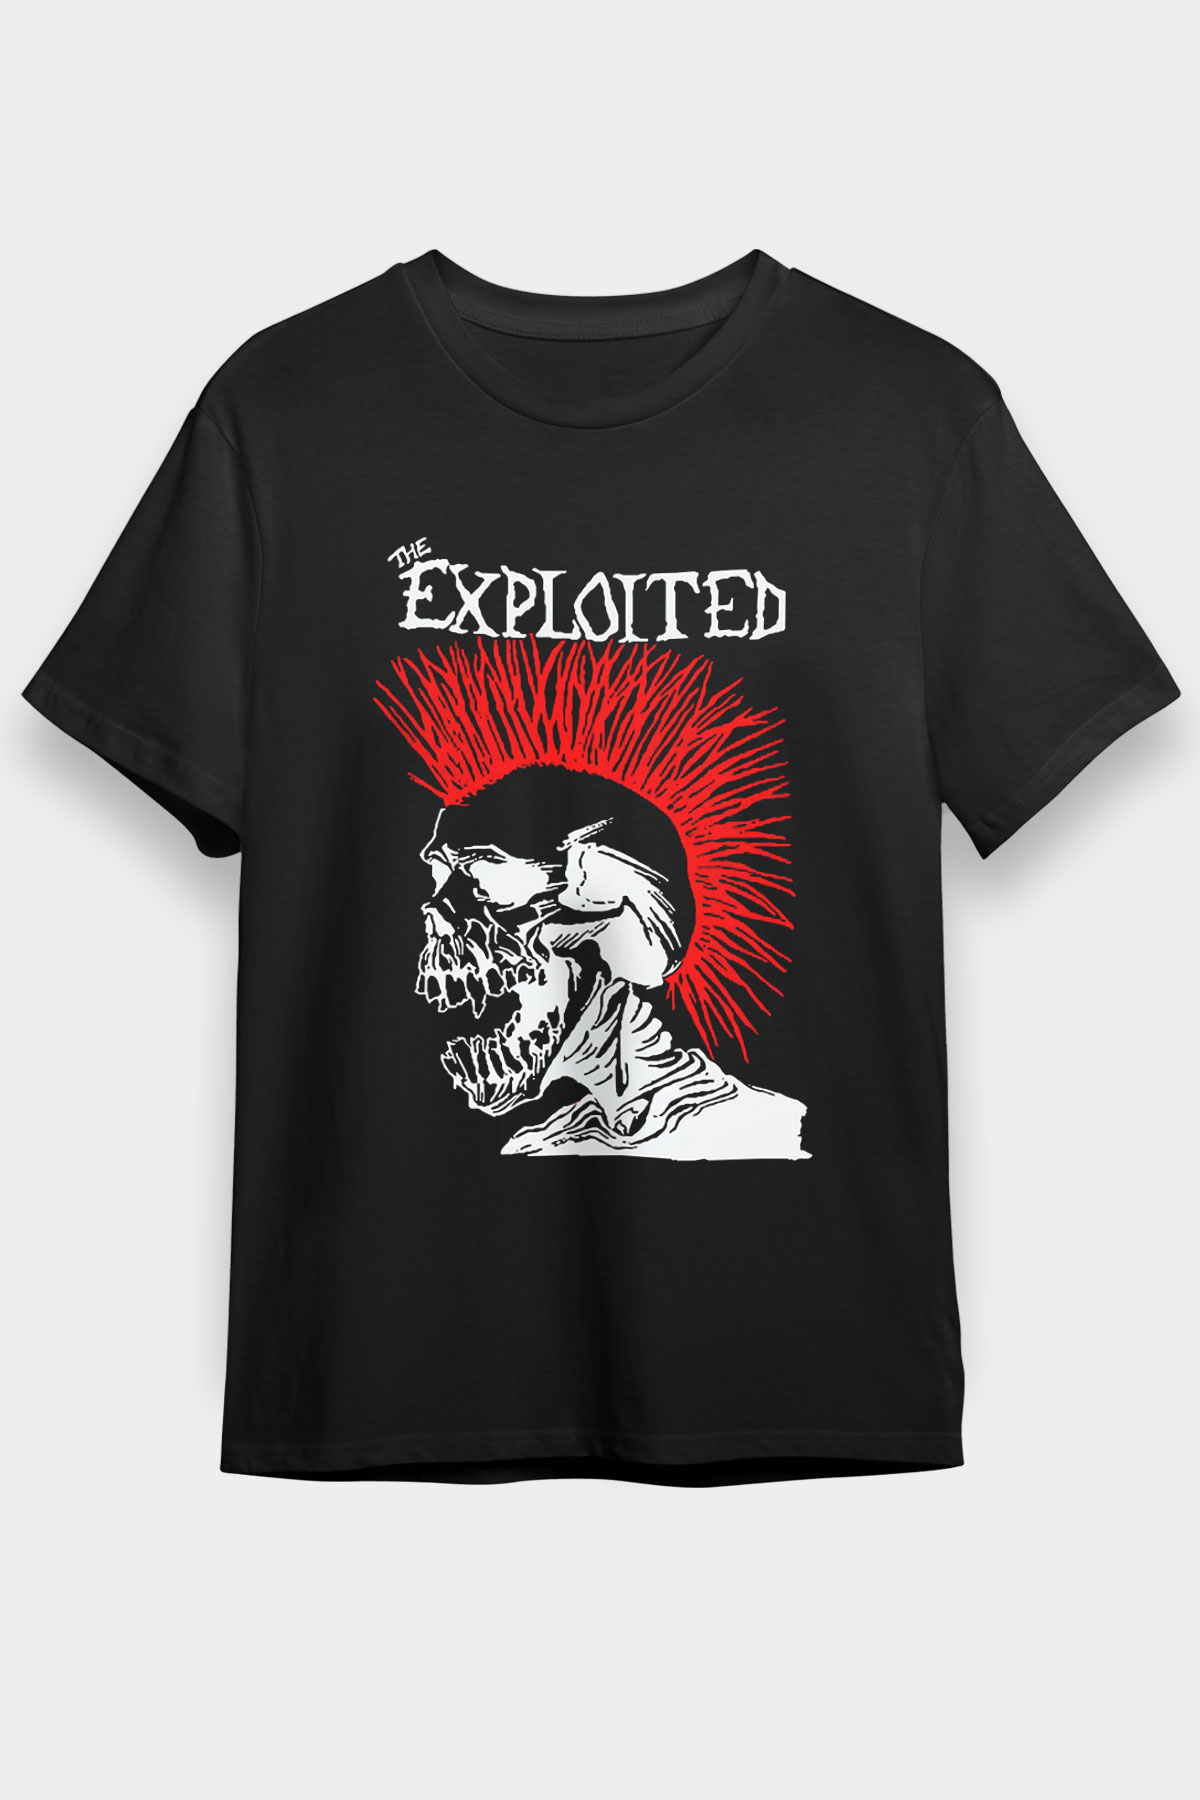 The Exploited Unisex T Shirt 